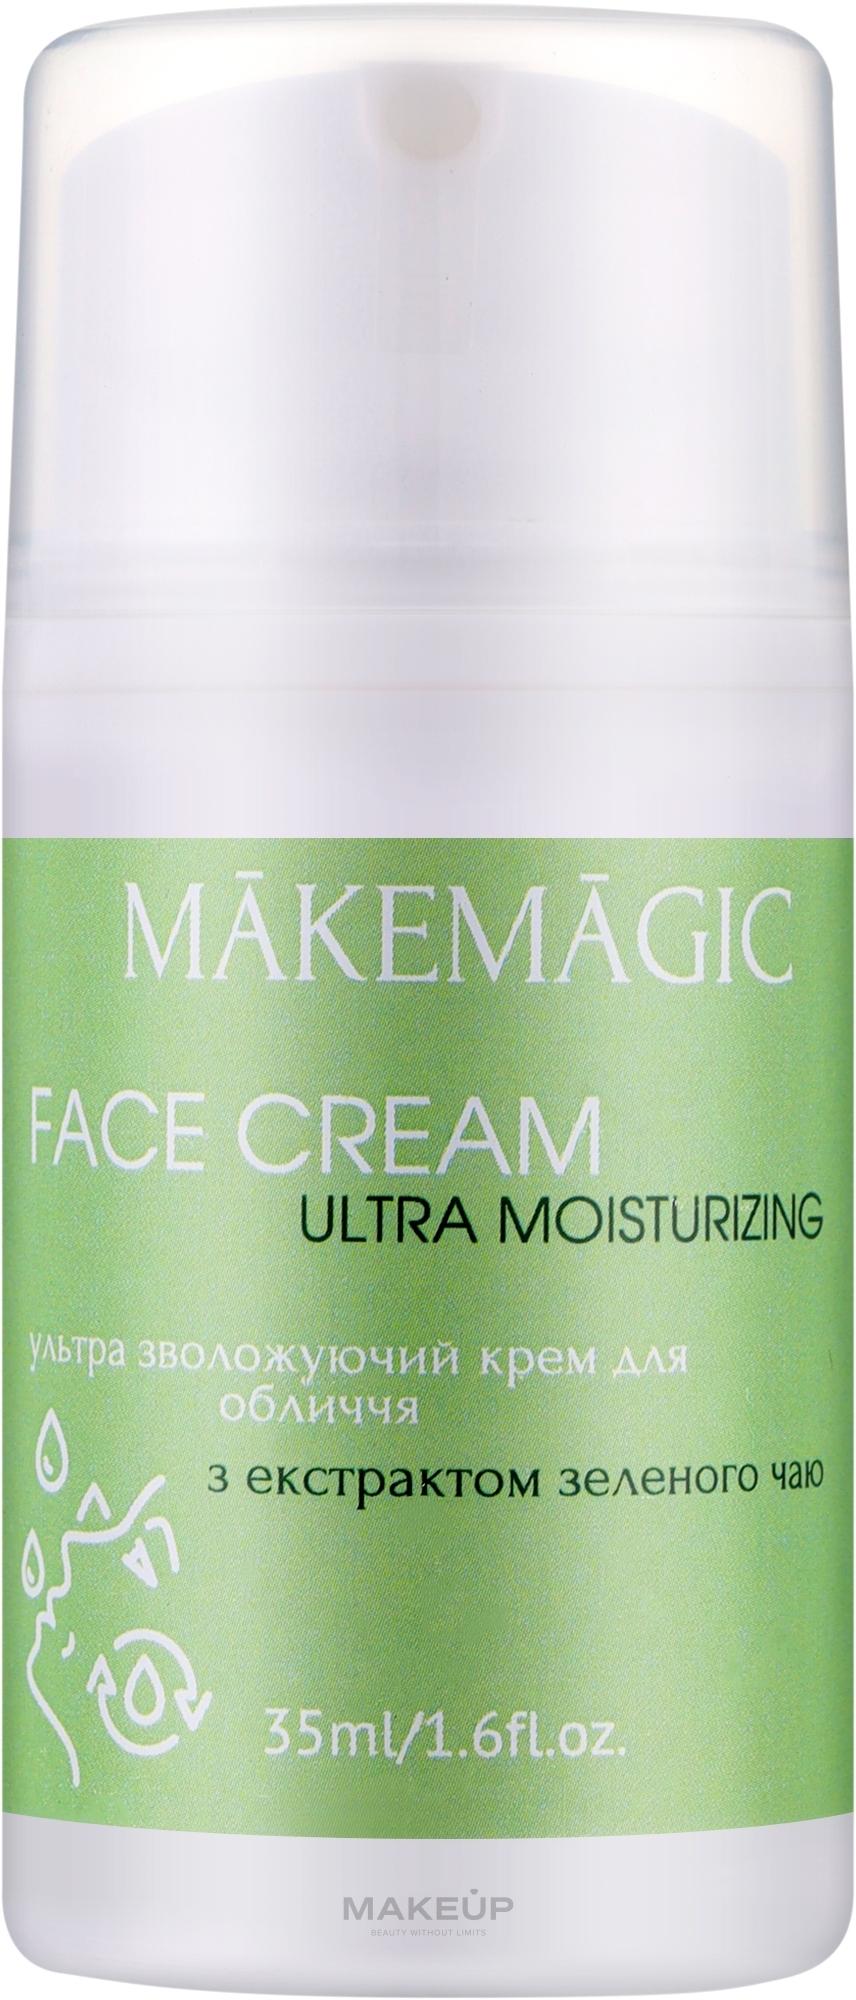 Ультраувлажняющий крем для лица с экстрактом зеленого чая - Makemagic Ultra Moisturizing Face Cream — фото 35ml